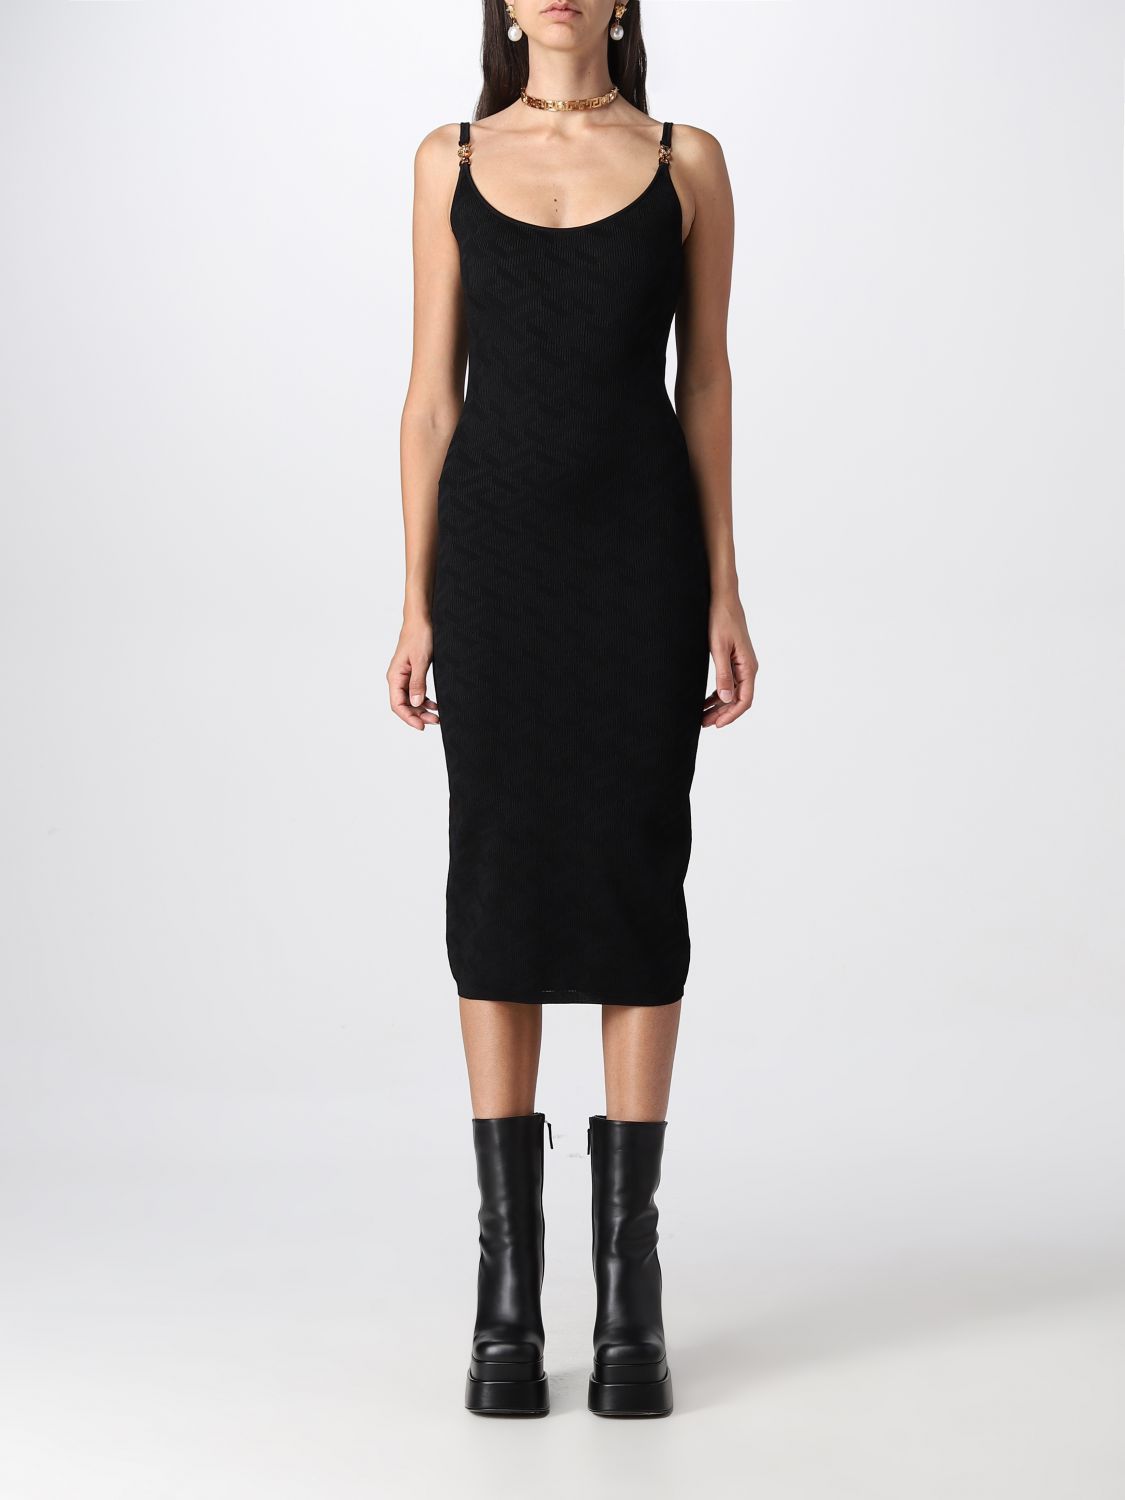 VERSACE: dress for women - Black | Versace dress 10072791A05236 online ...